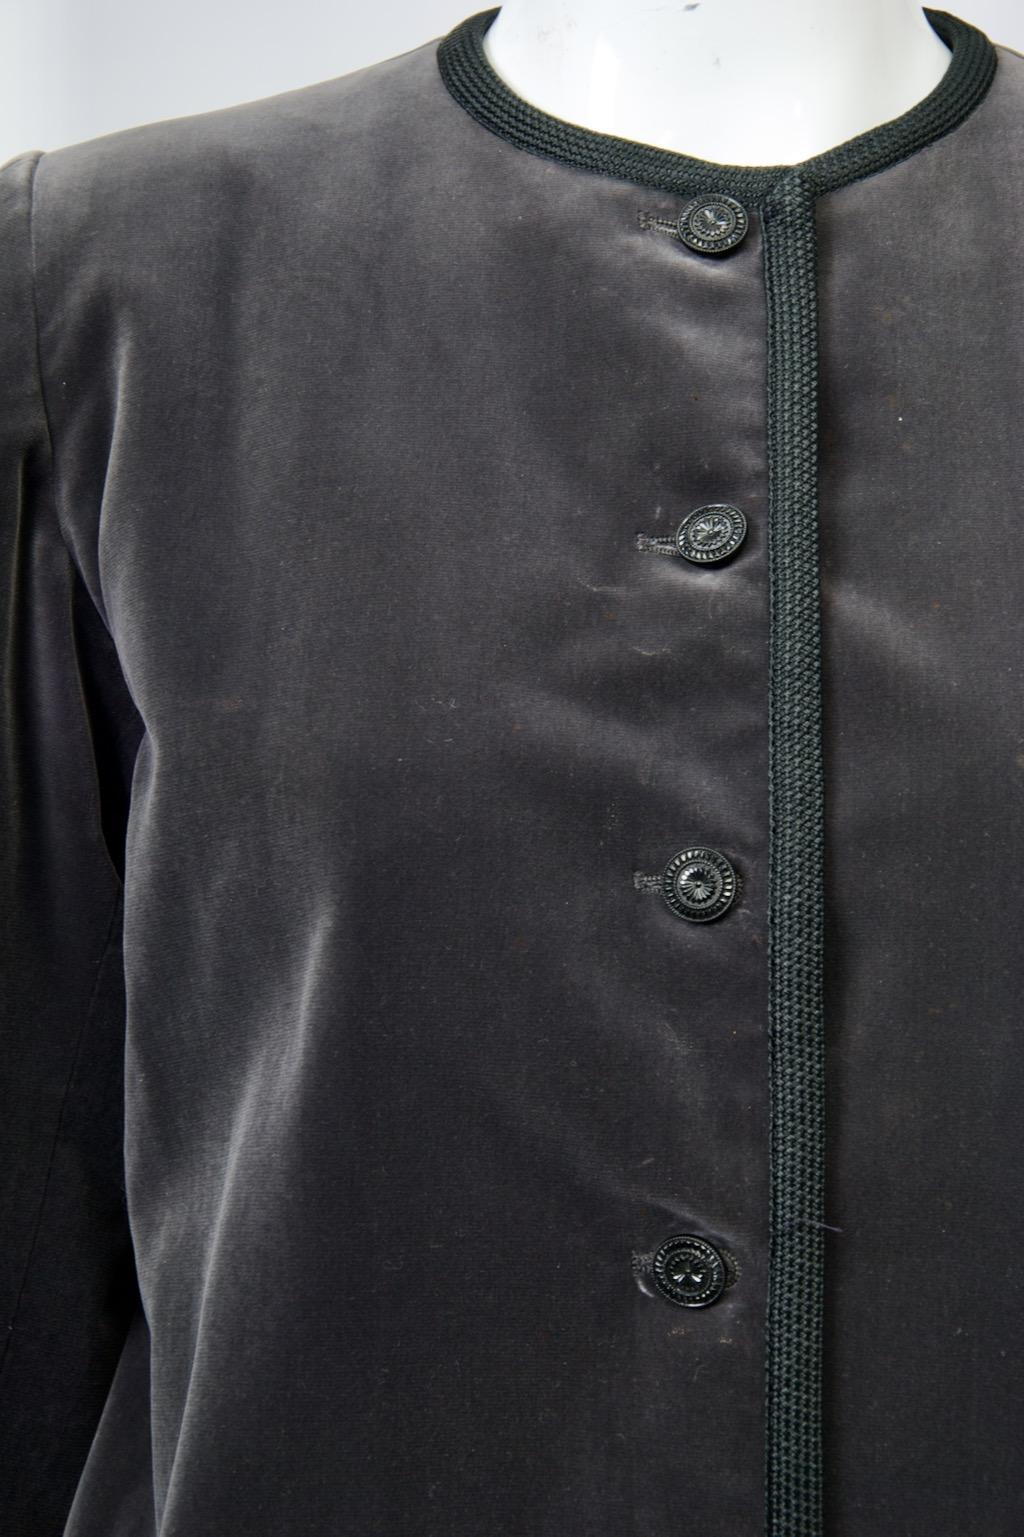 Yves Saint Laurent Rive Gauche-Jacke aus anthrazitfarbenem Samt, ca. Ende der 1970er-/Anfang der 1980er-Jahre, an allen Rändern mit schwarzer Borte eingefasst. Die kragenlose Jacke ist kurz geschnitten, hat schmale Ärmel und fünf Knöpfe im Jet-Stil.